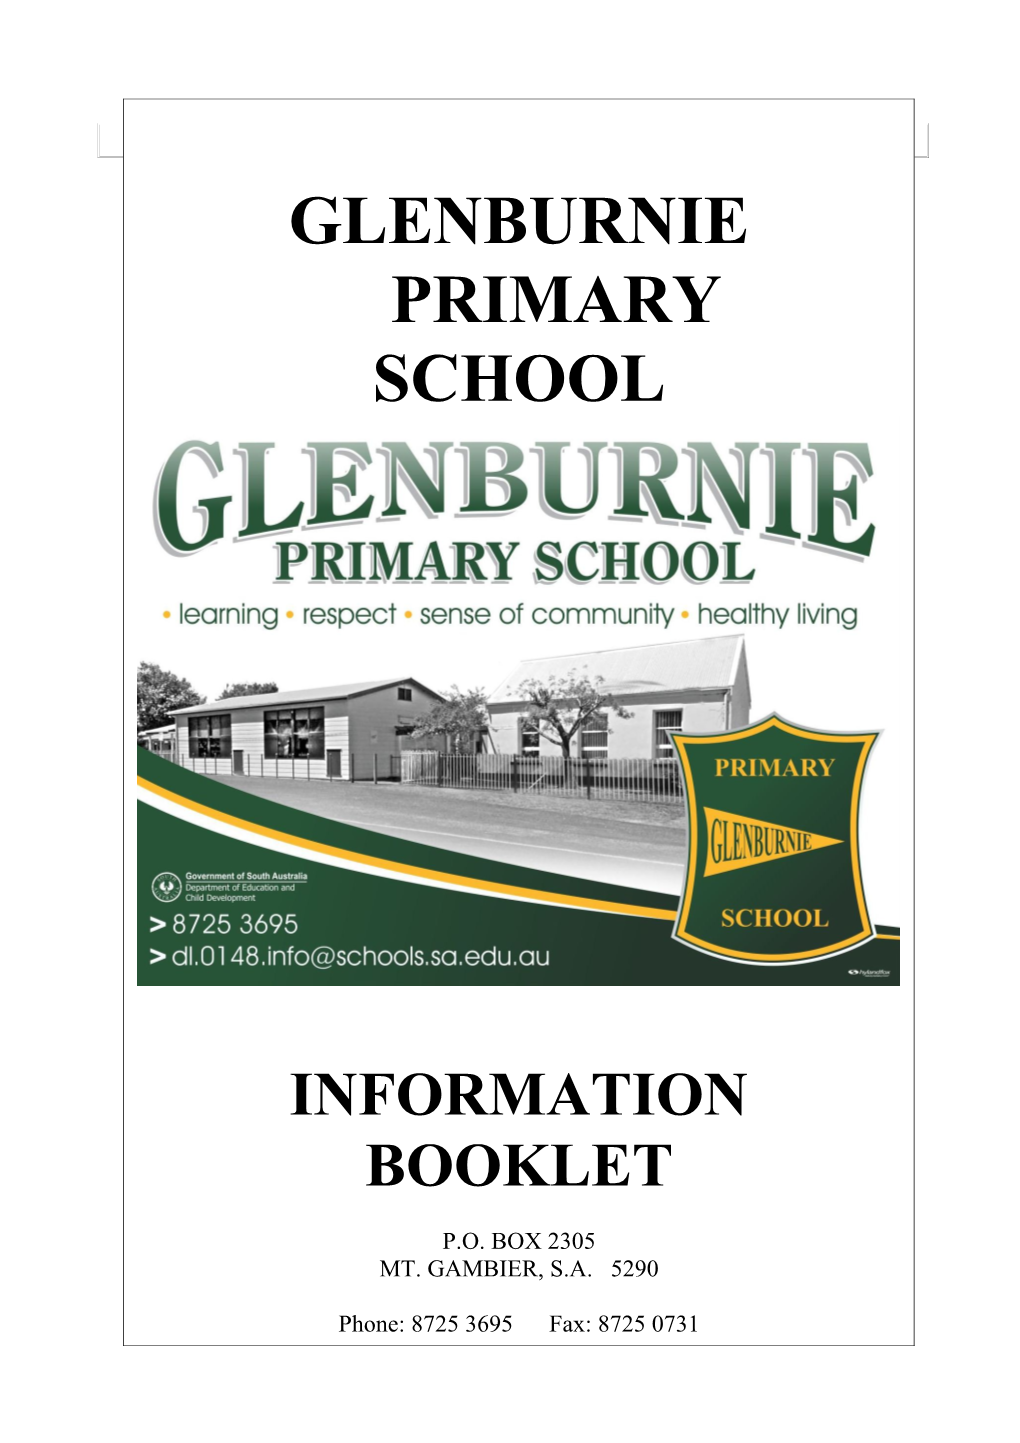 Glenburnie Primary School